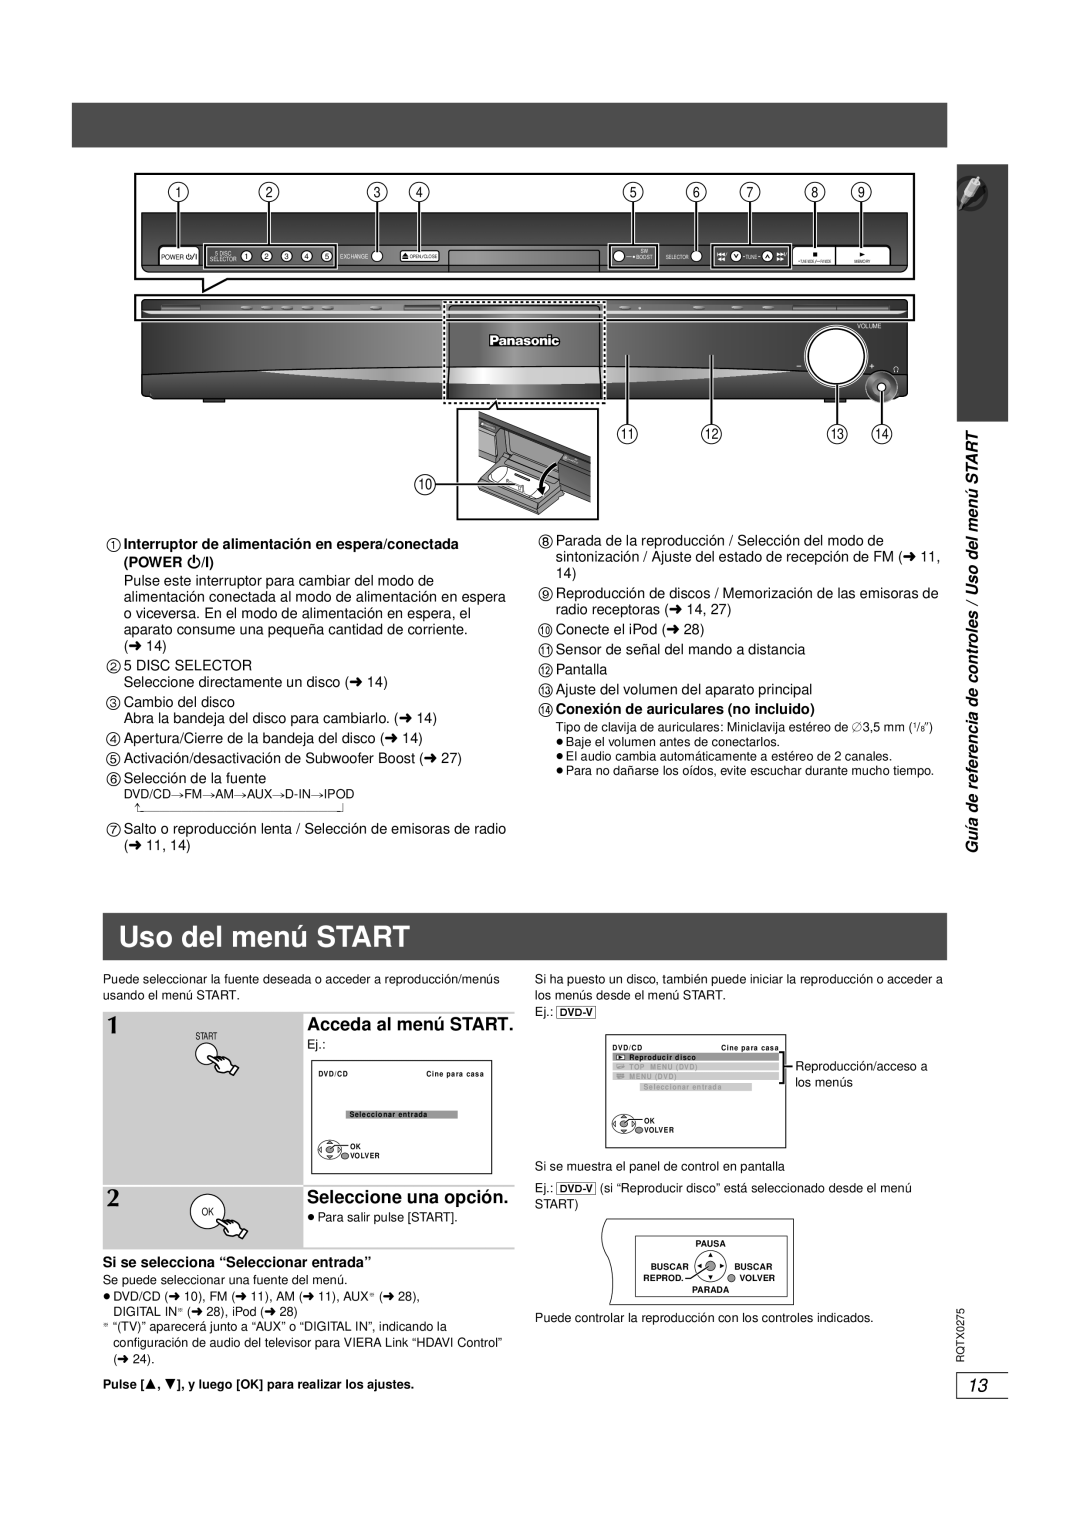 Panasonic SC-PT665 manual Uso del menú START, Seleccione una opción, Acceda al menú START 